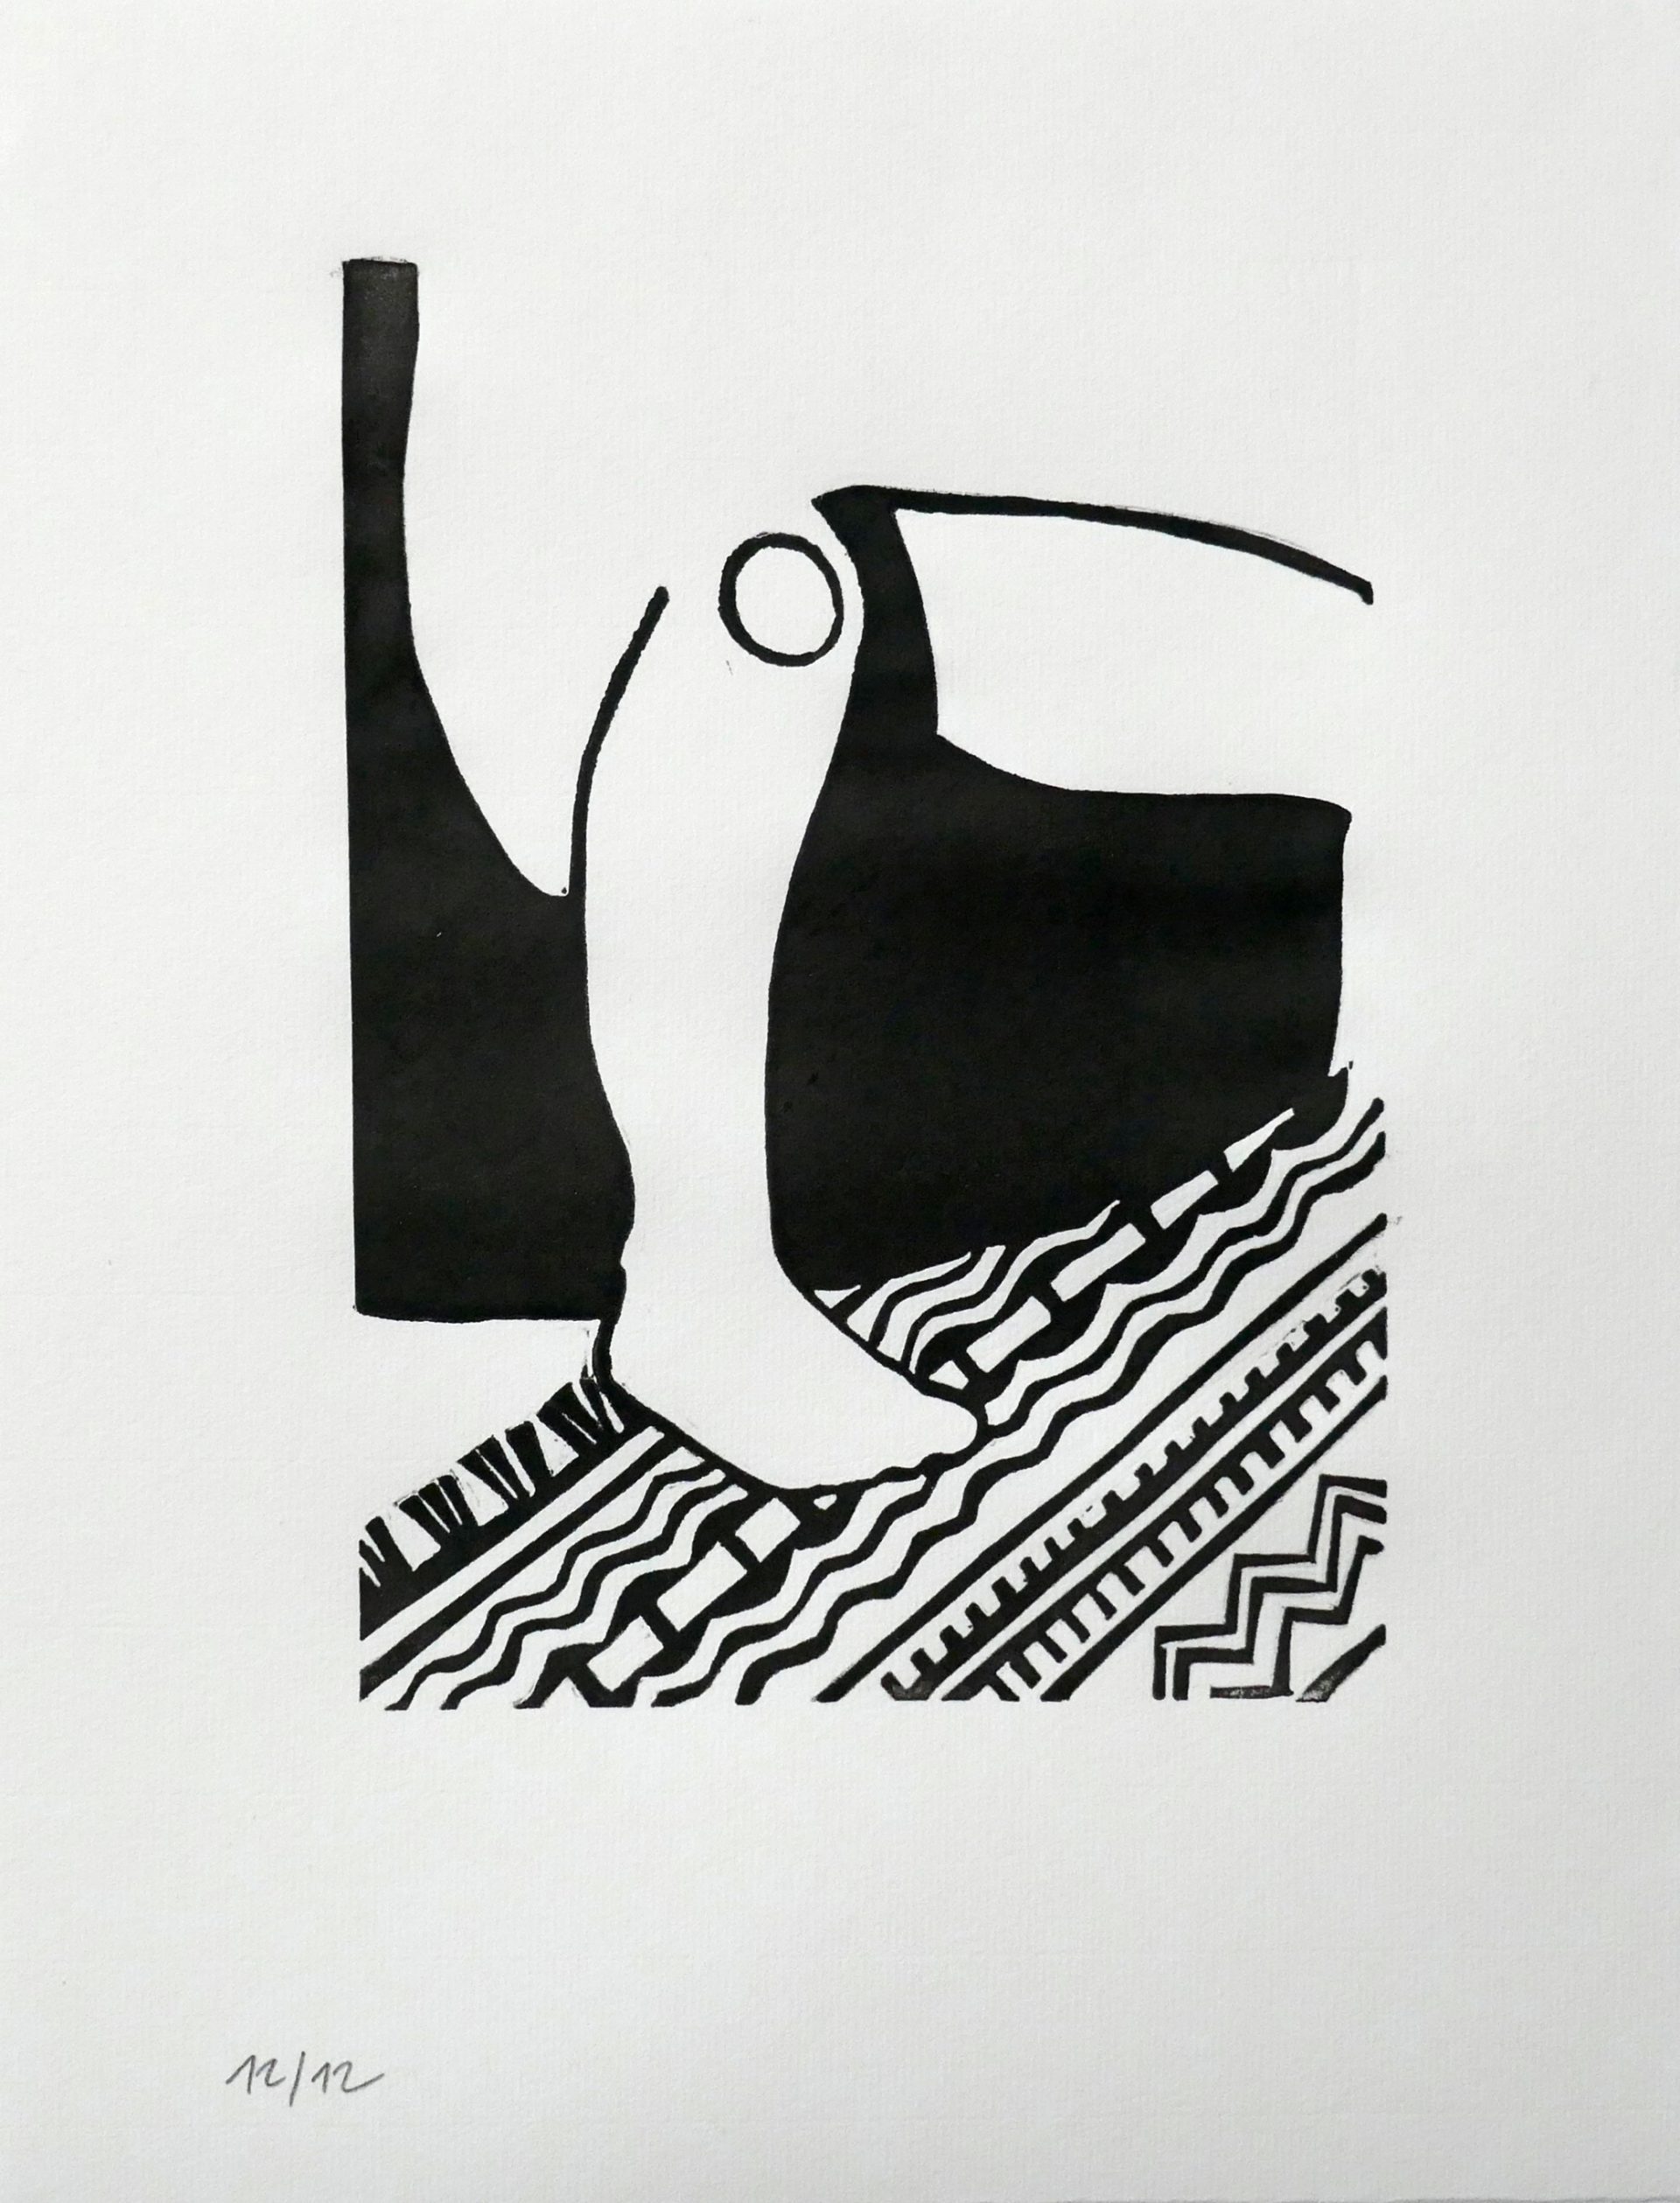 Genoux plié, 2019, linocut, image size 21x15 cm, paper size 31,5x25 cm, edition of 12